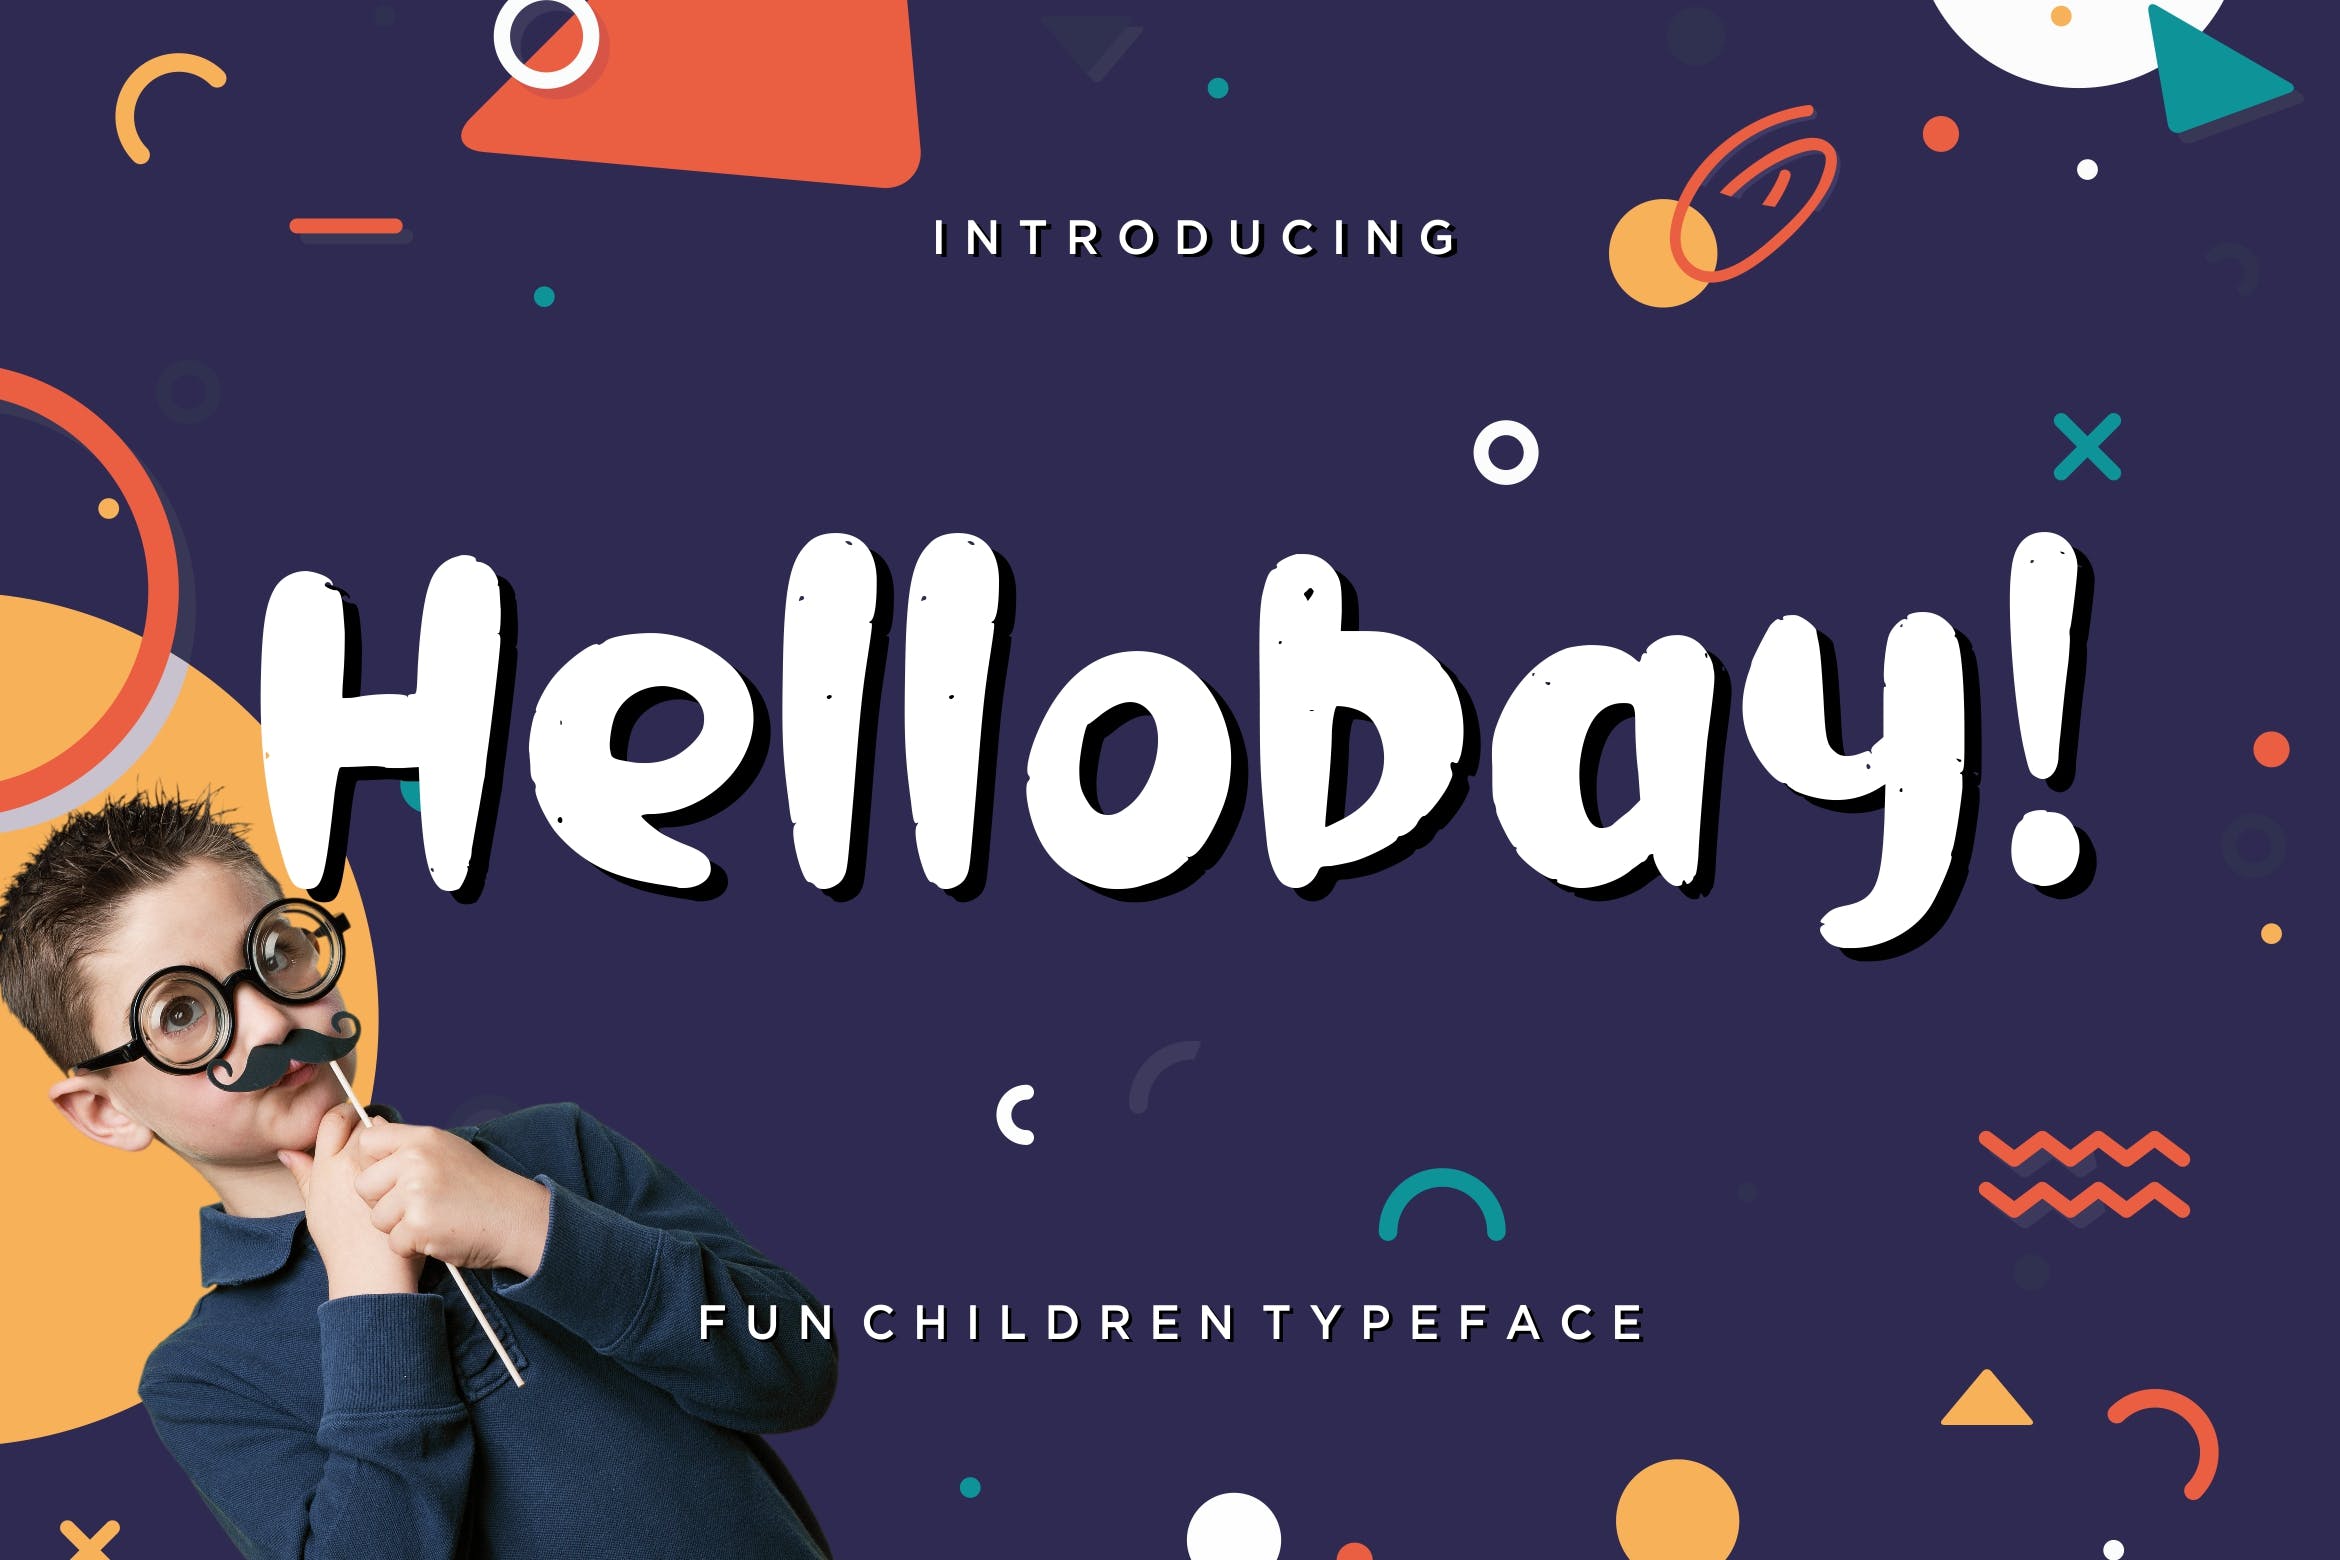 儿童主题设计适用的可爱风格英文画笔字体 Hellobay Fun Children Typeface插图